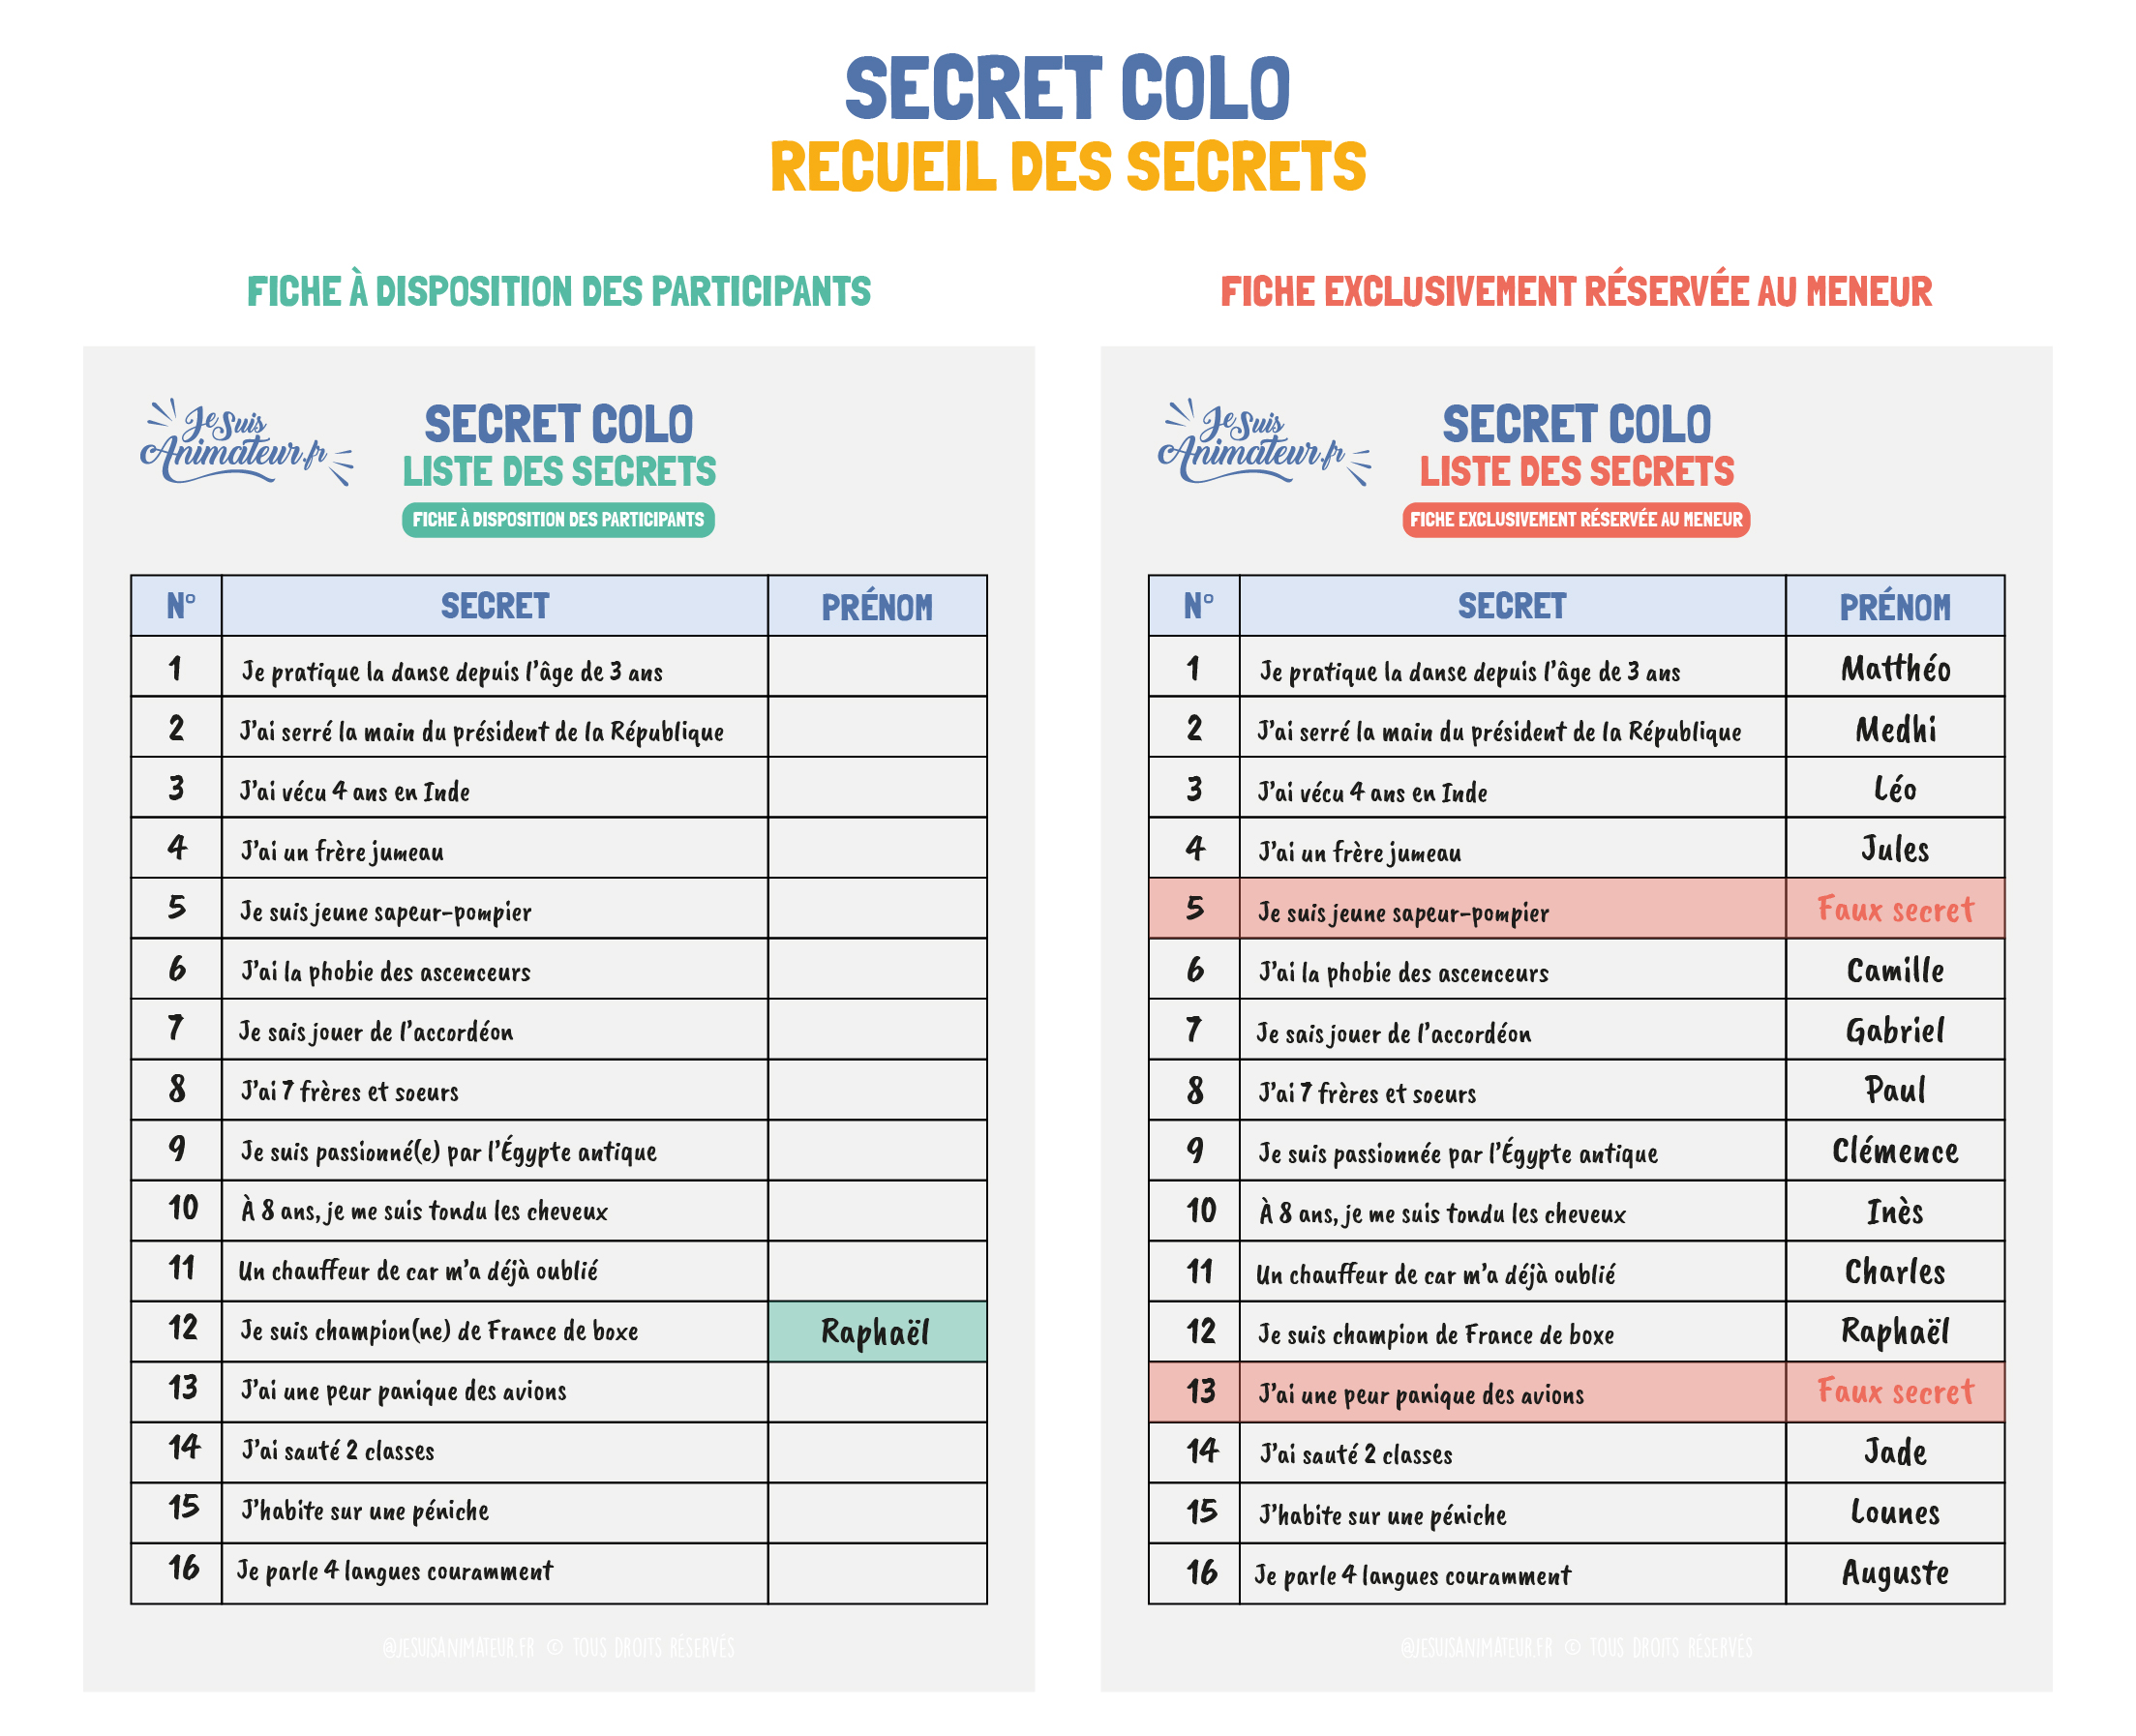 Étape 1 : recueil des secrets par le meneur du jeu « Secret colo »